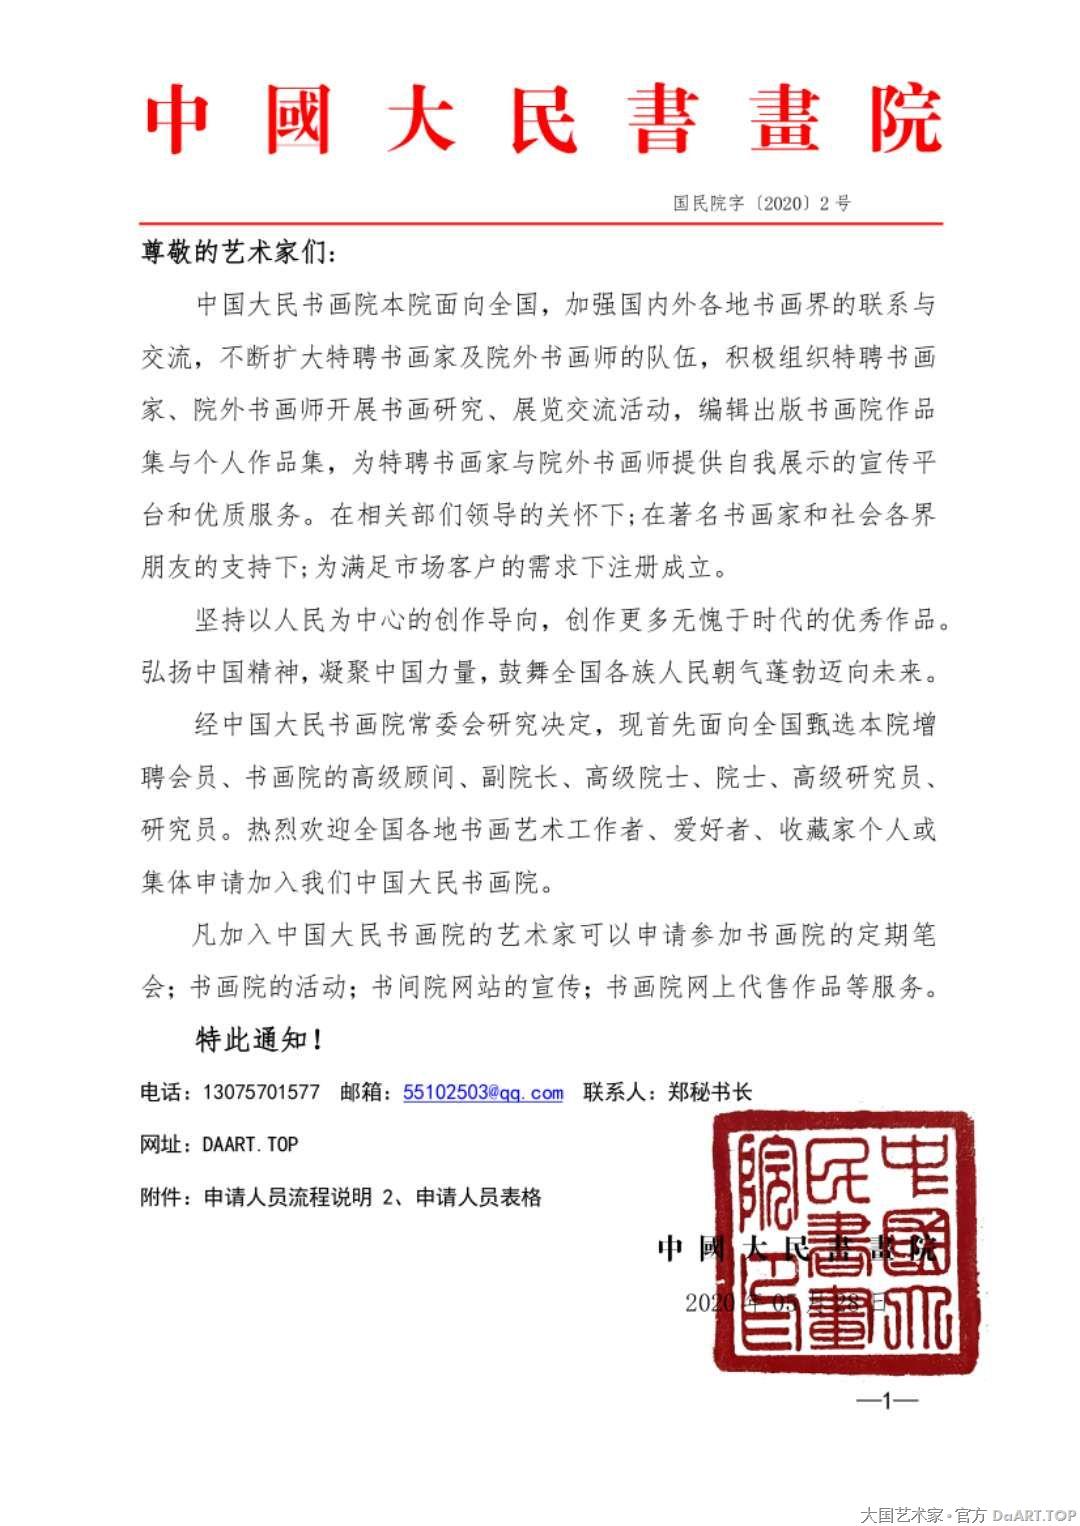 中国大民书画院增聘会员公告.jpg